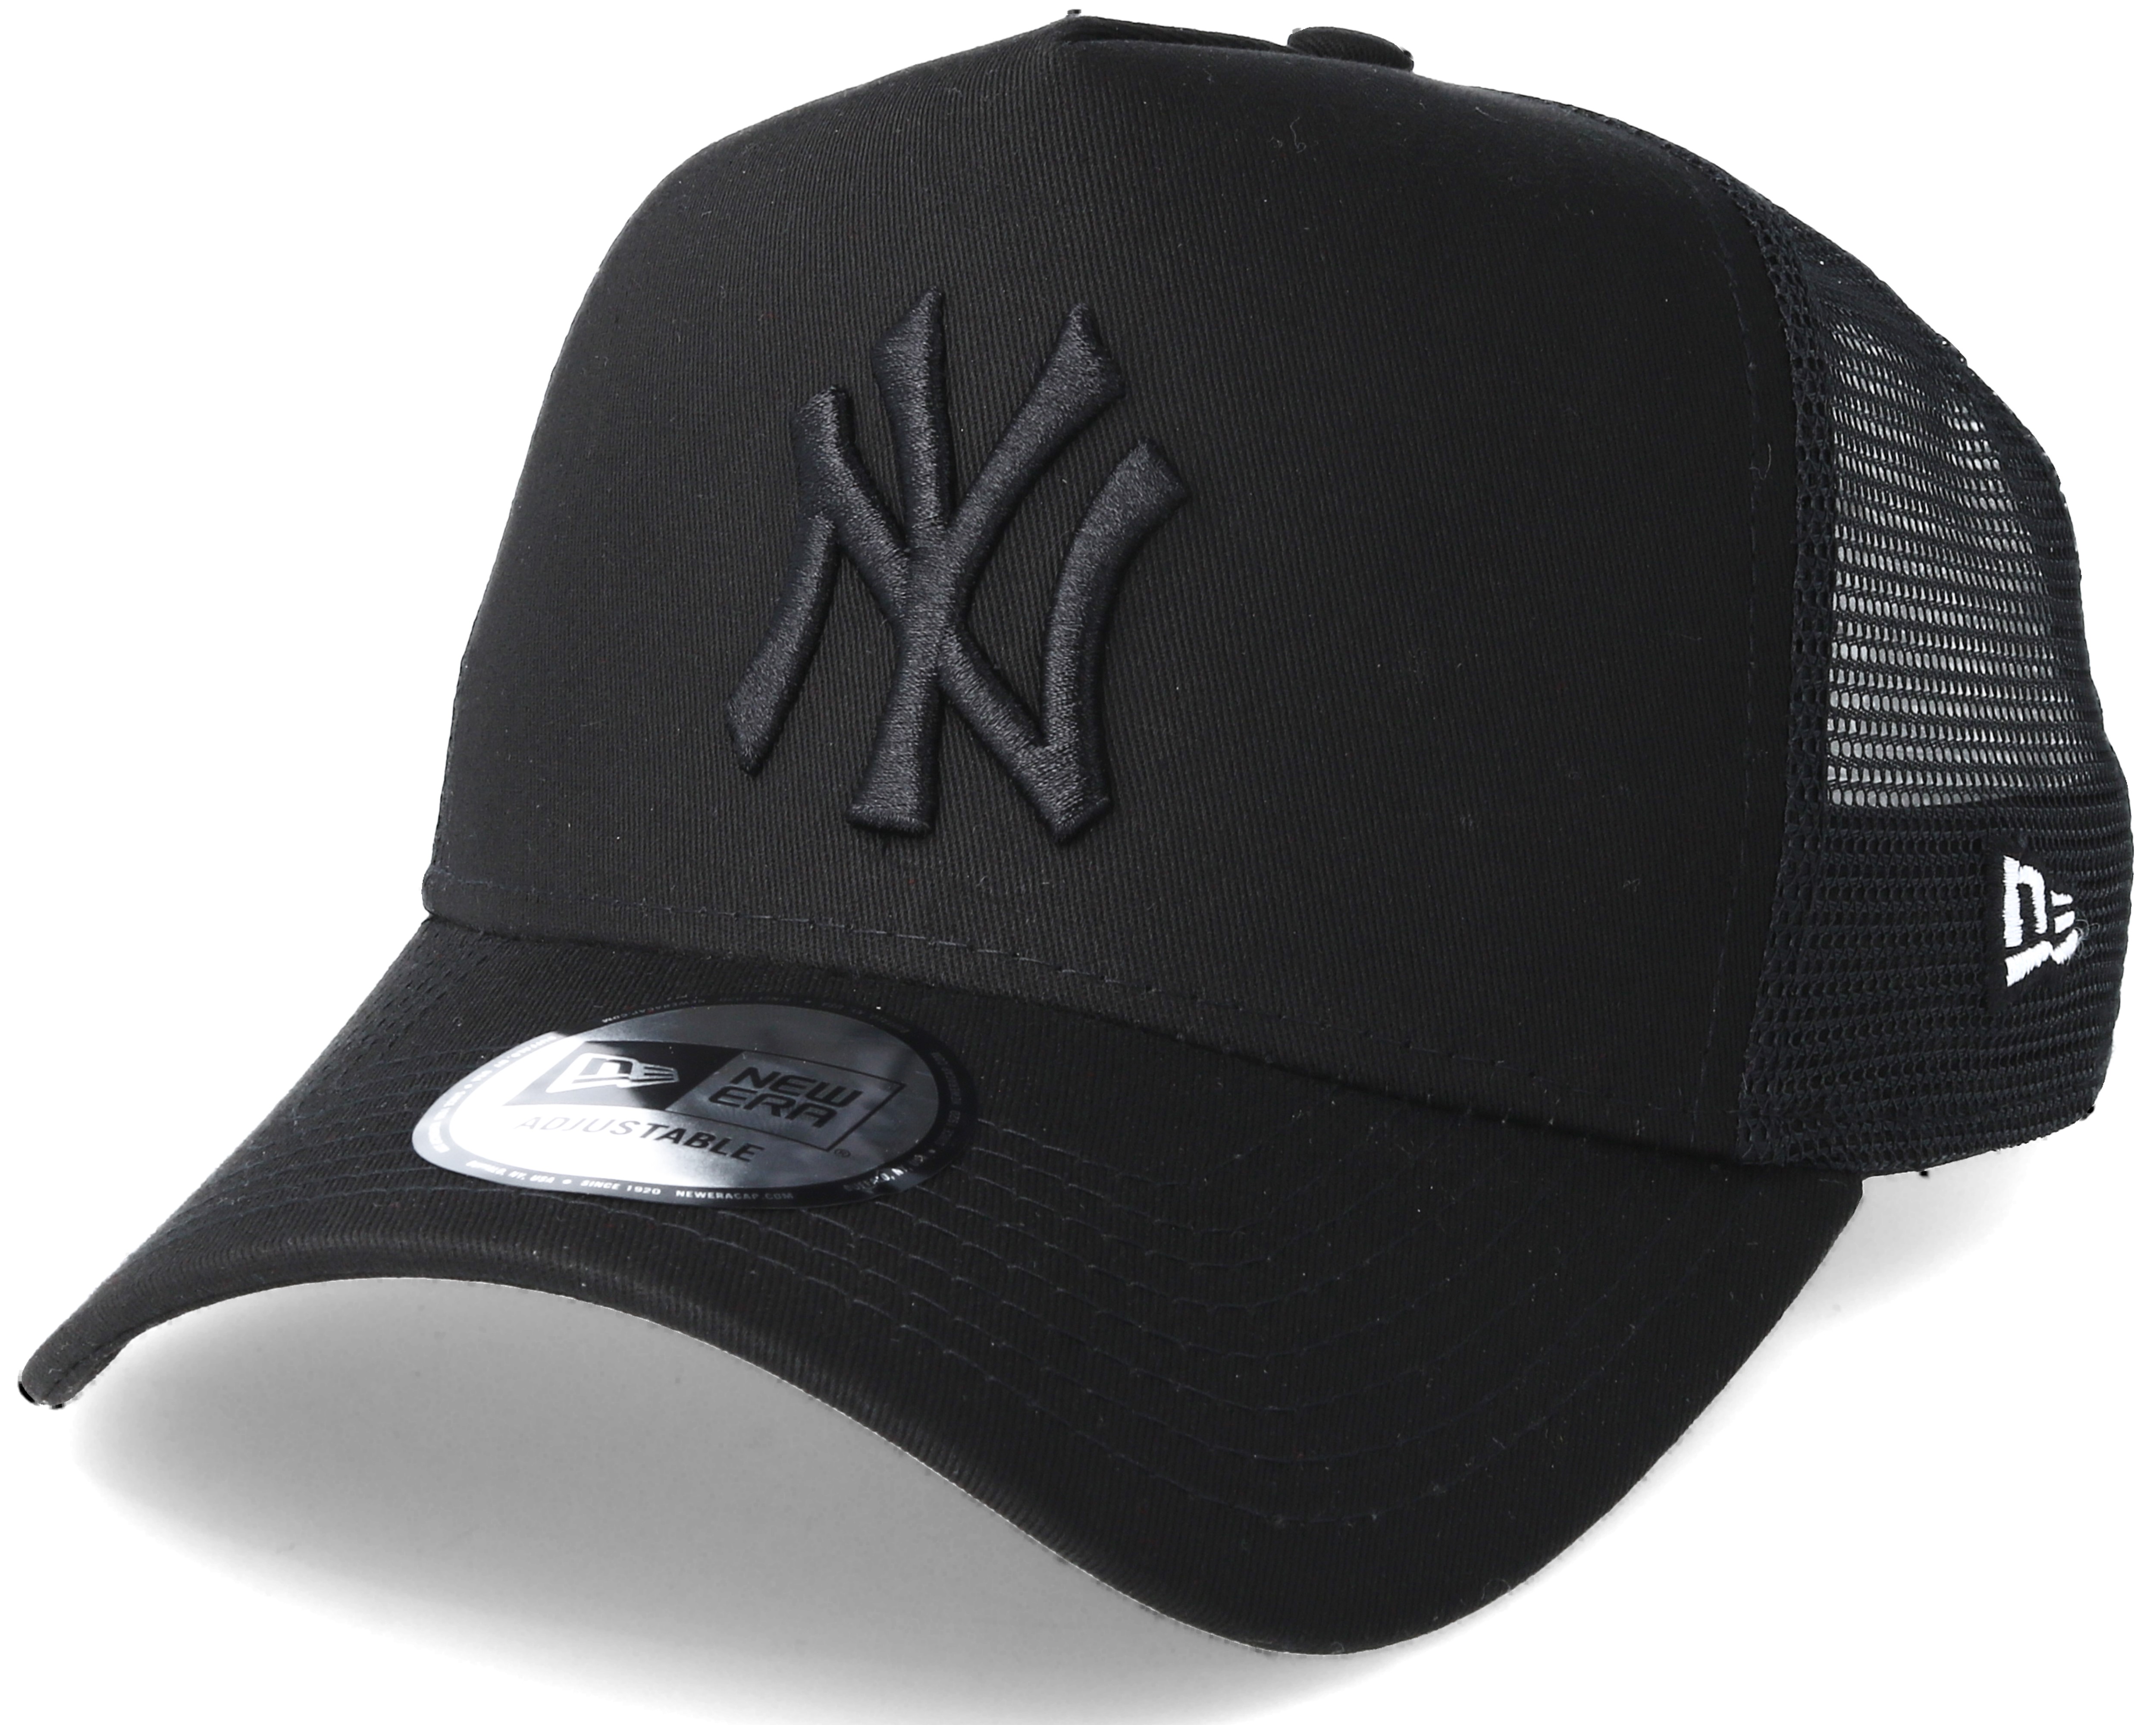 New York Yankees League Essential Trucker Black Adjustable - New Era caps | Hatstore.co.uk